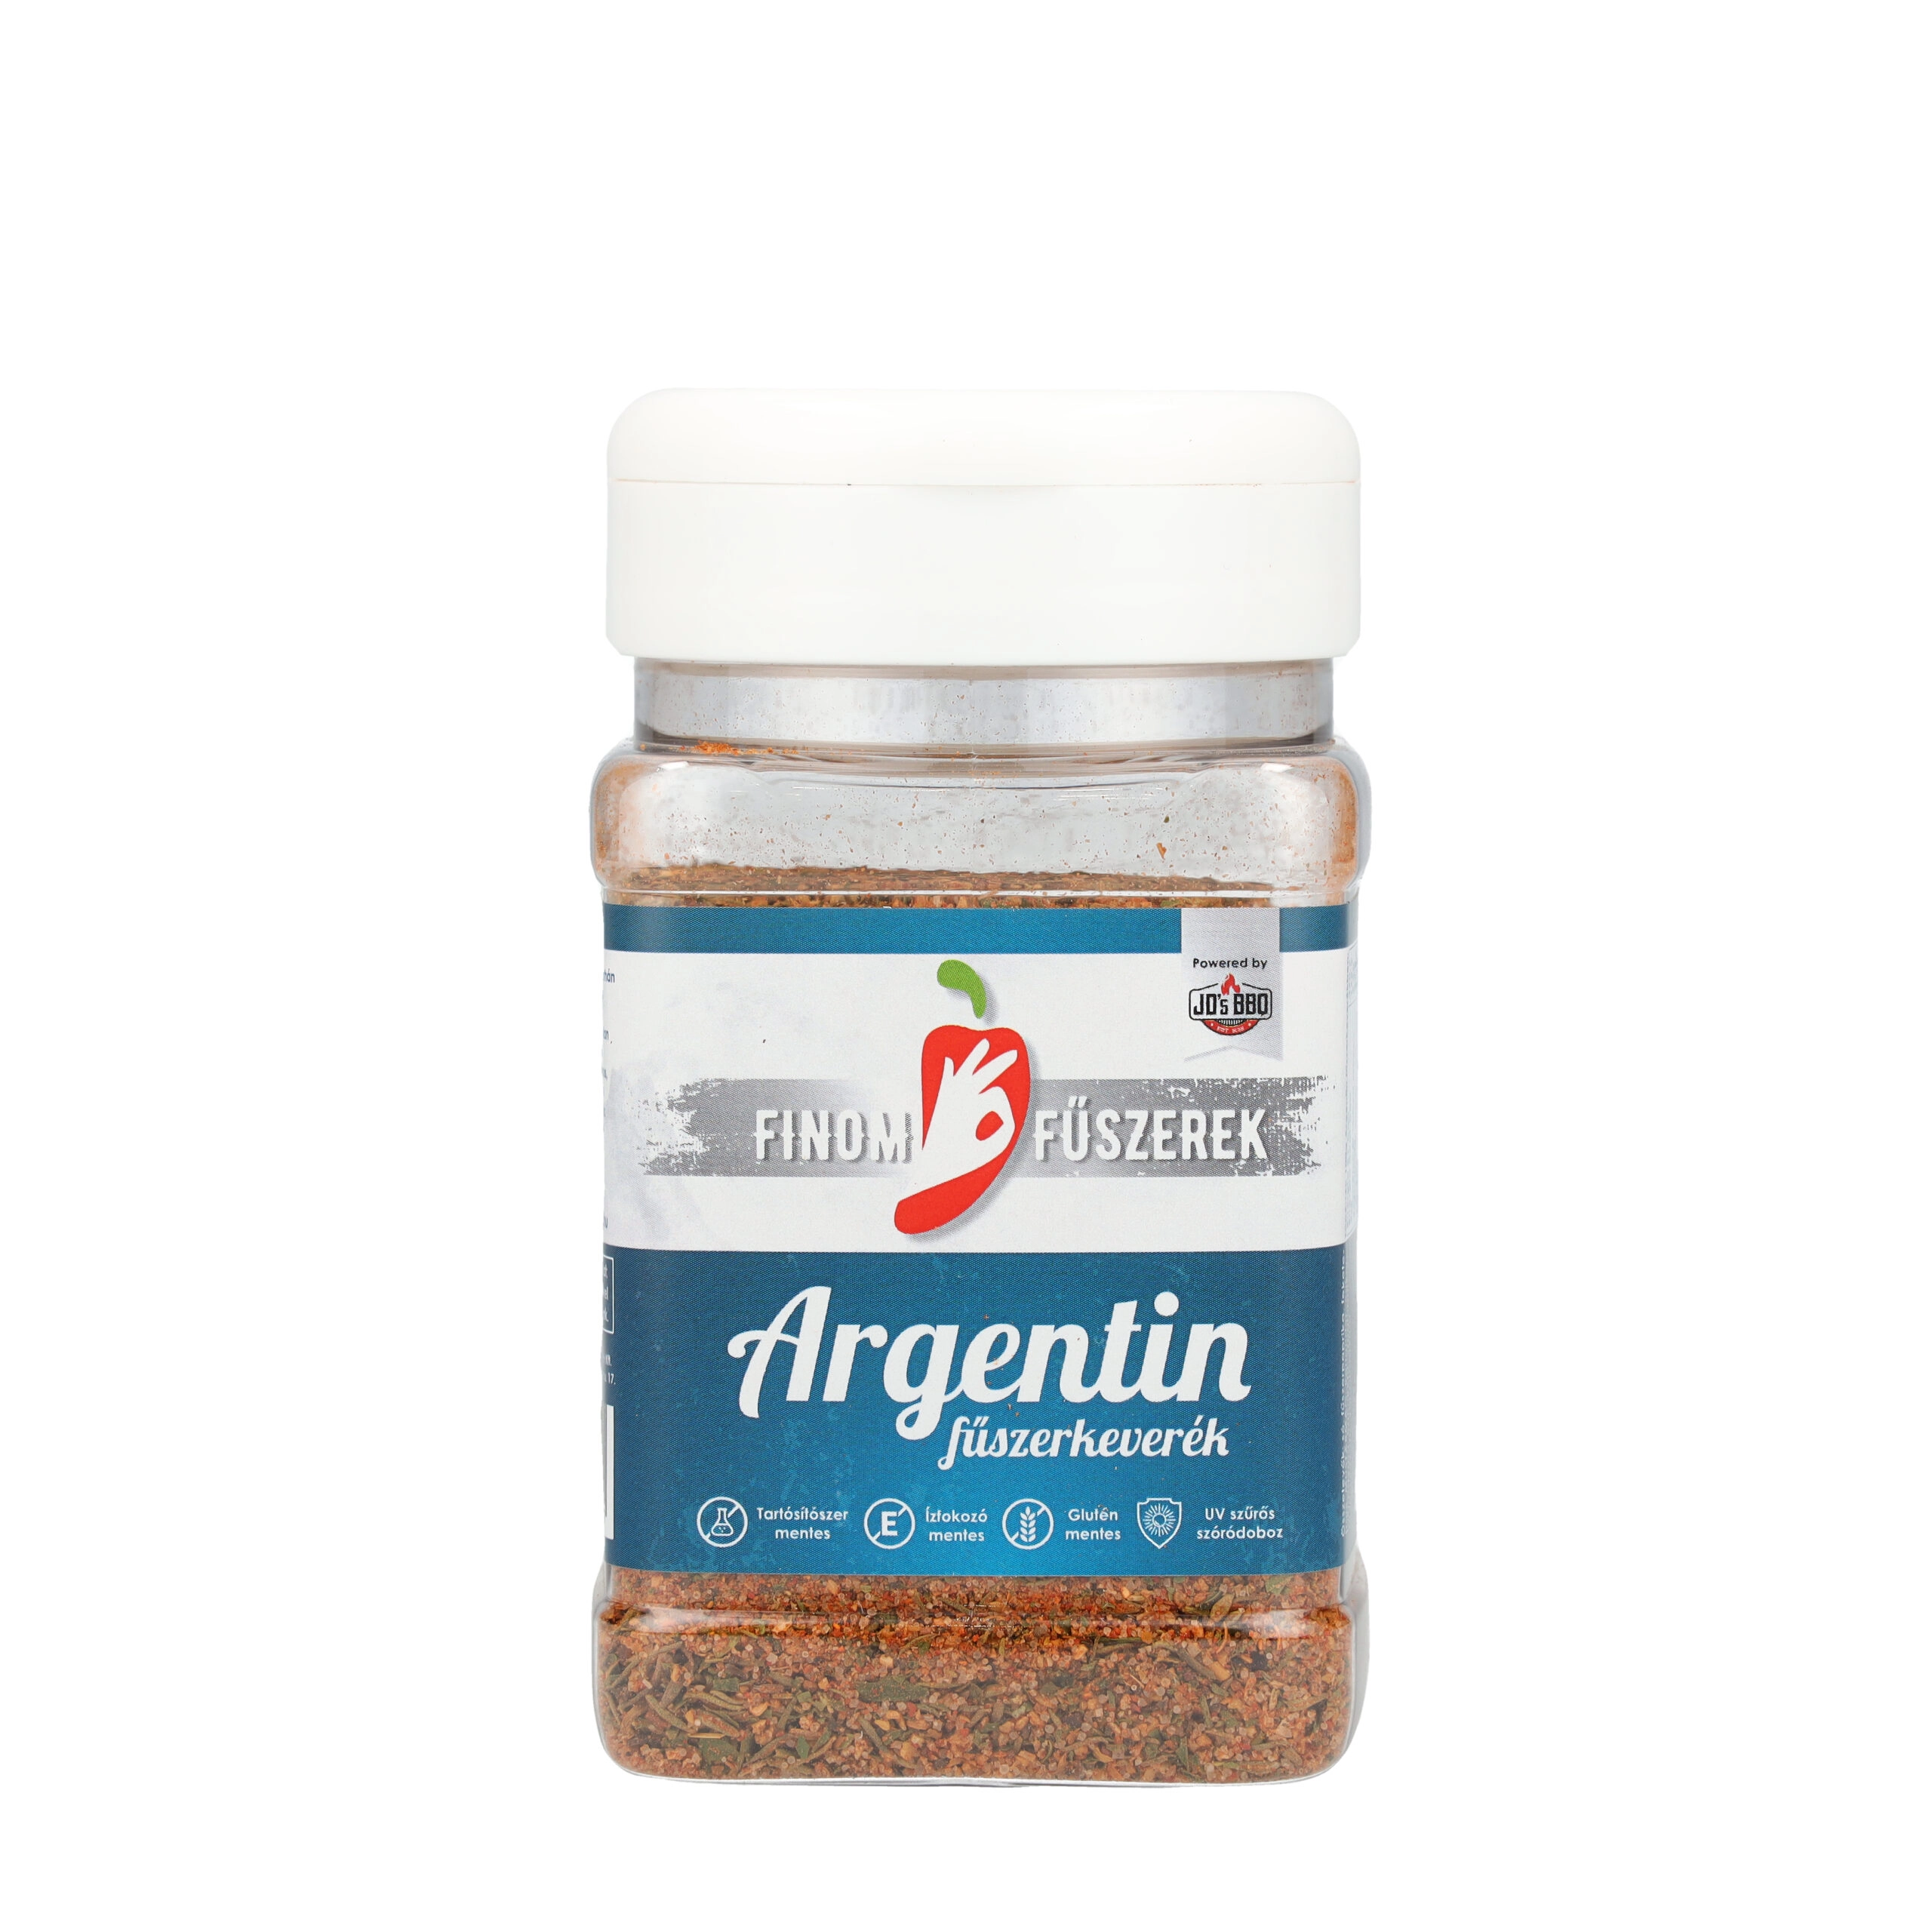 Argentin fűszerkeverék 200g szóródoboz